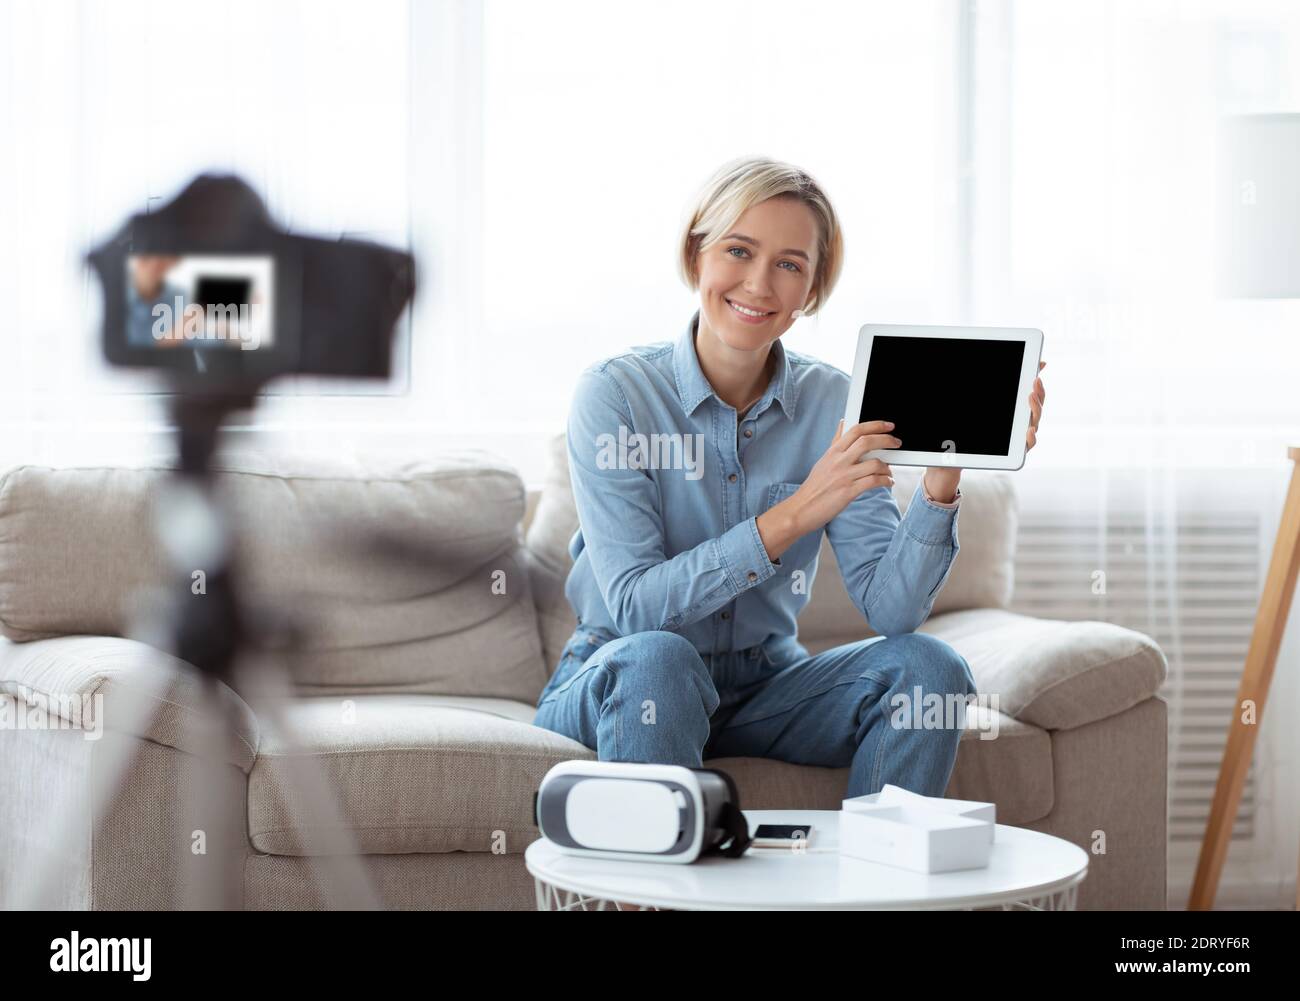 Influenceur féminin qui passe en revue la vidéo du nouvel ordinateur tablette, fait la promotion du nouveau modèle de gadget, en utilisant un appareil photo professionnel Banque D'Images